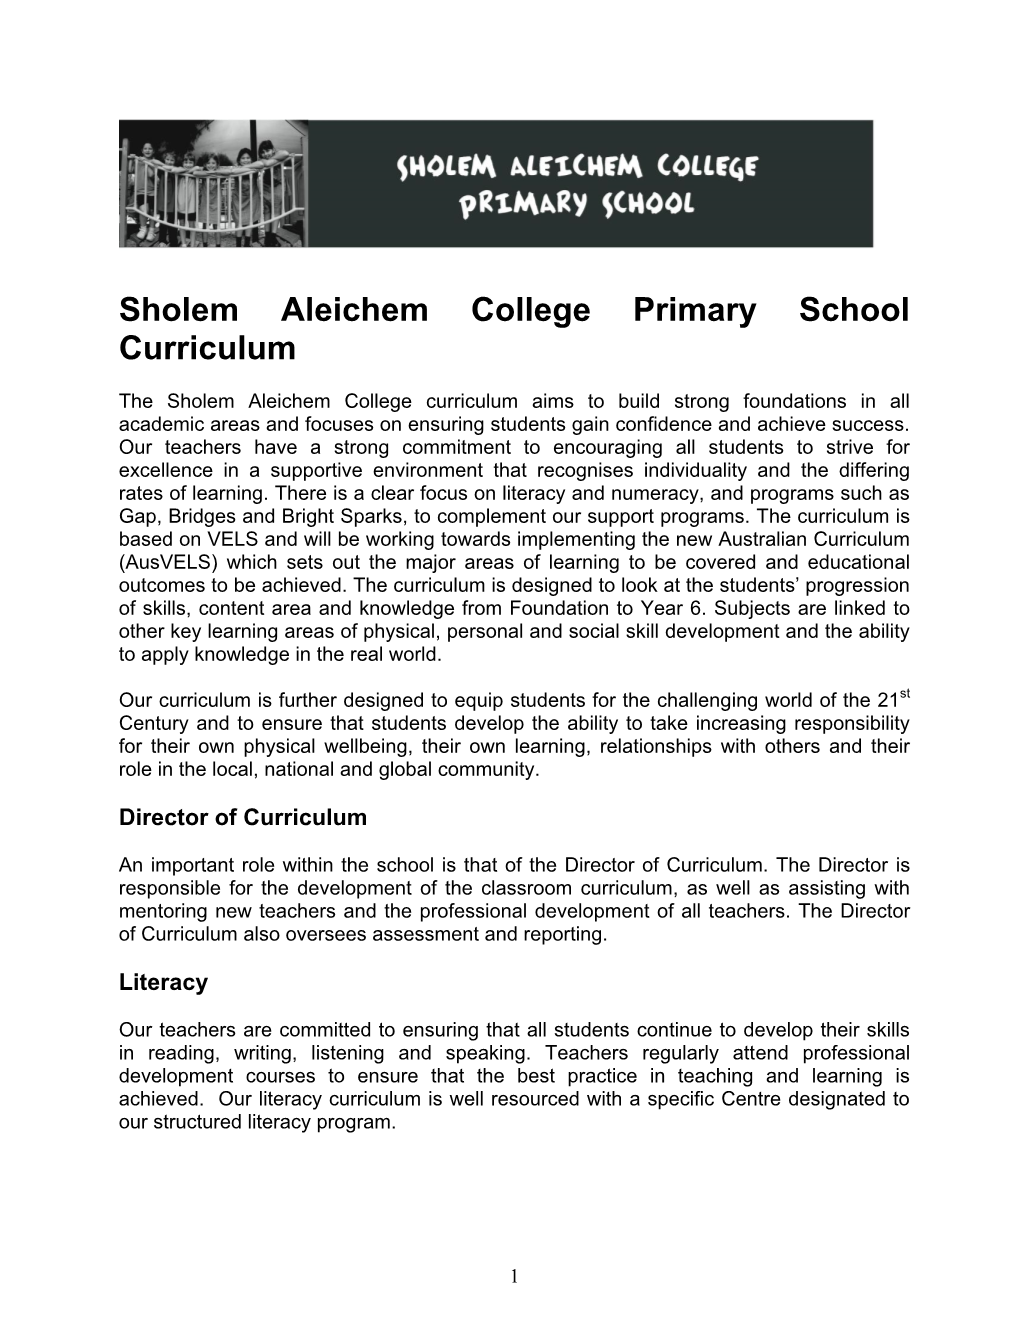 Sholem Aleichem College Primary School Curriculum